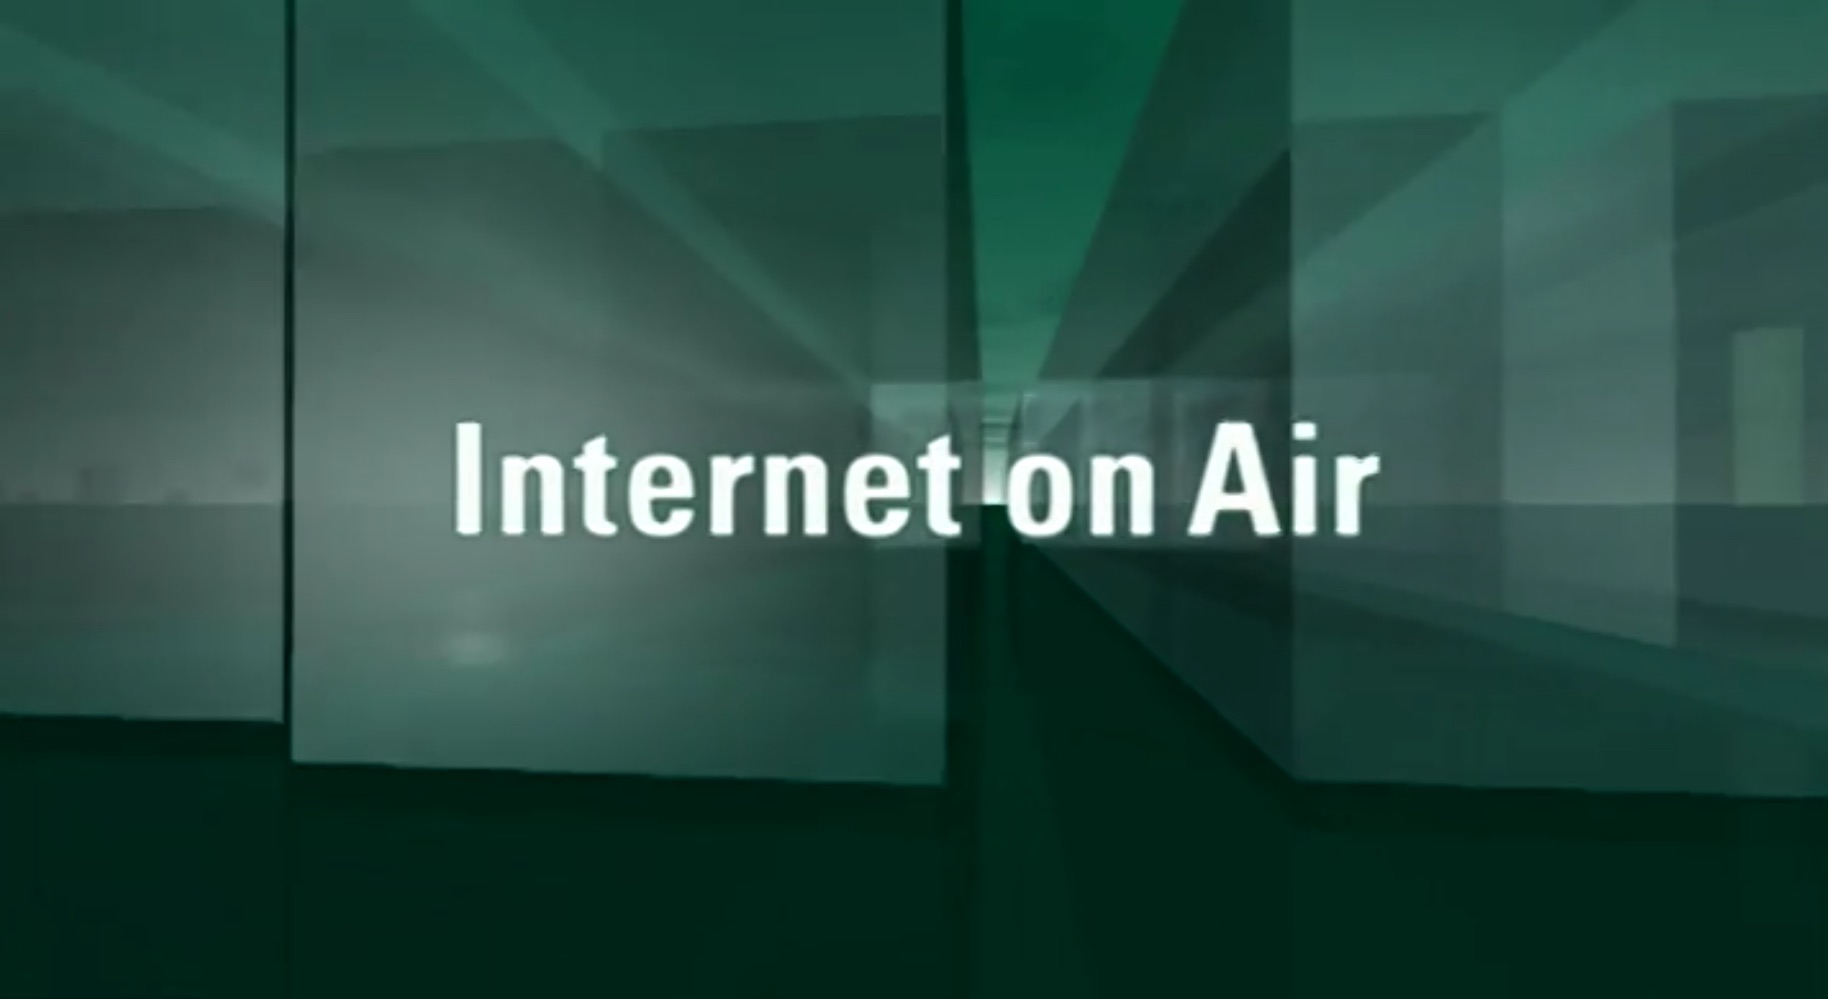 Symbolbild internet on air by Franz-Rudolf Borsch